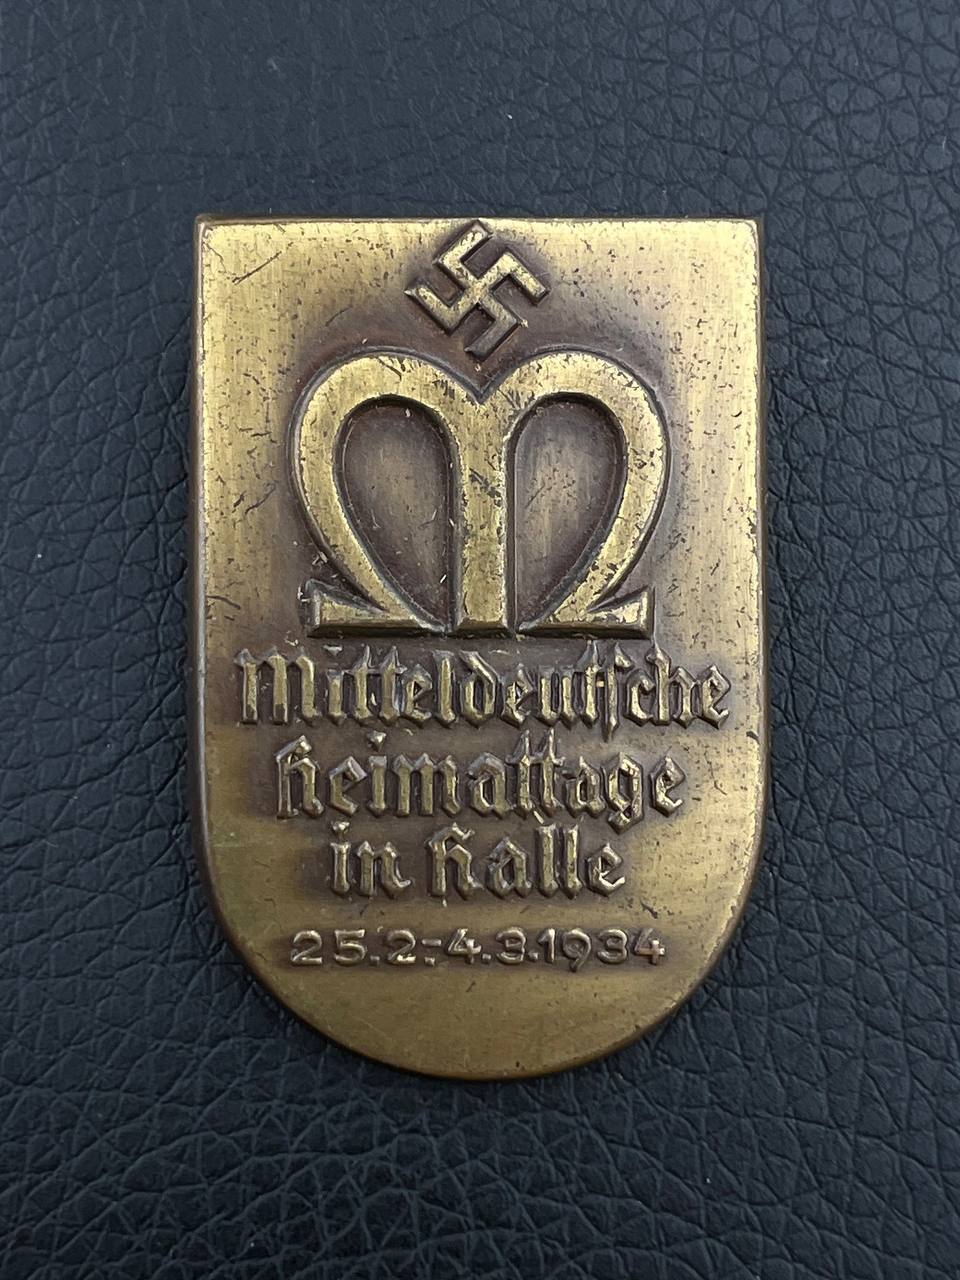 Mitteldeutsche  Heimattage in Halle 1934 г. – Дни Отечества в Центральной Германии от Алексея С.